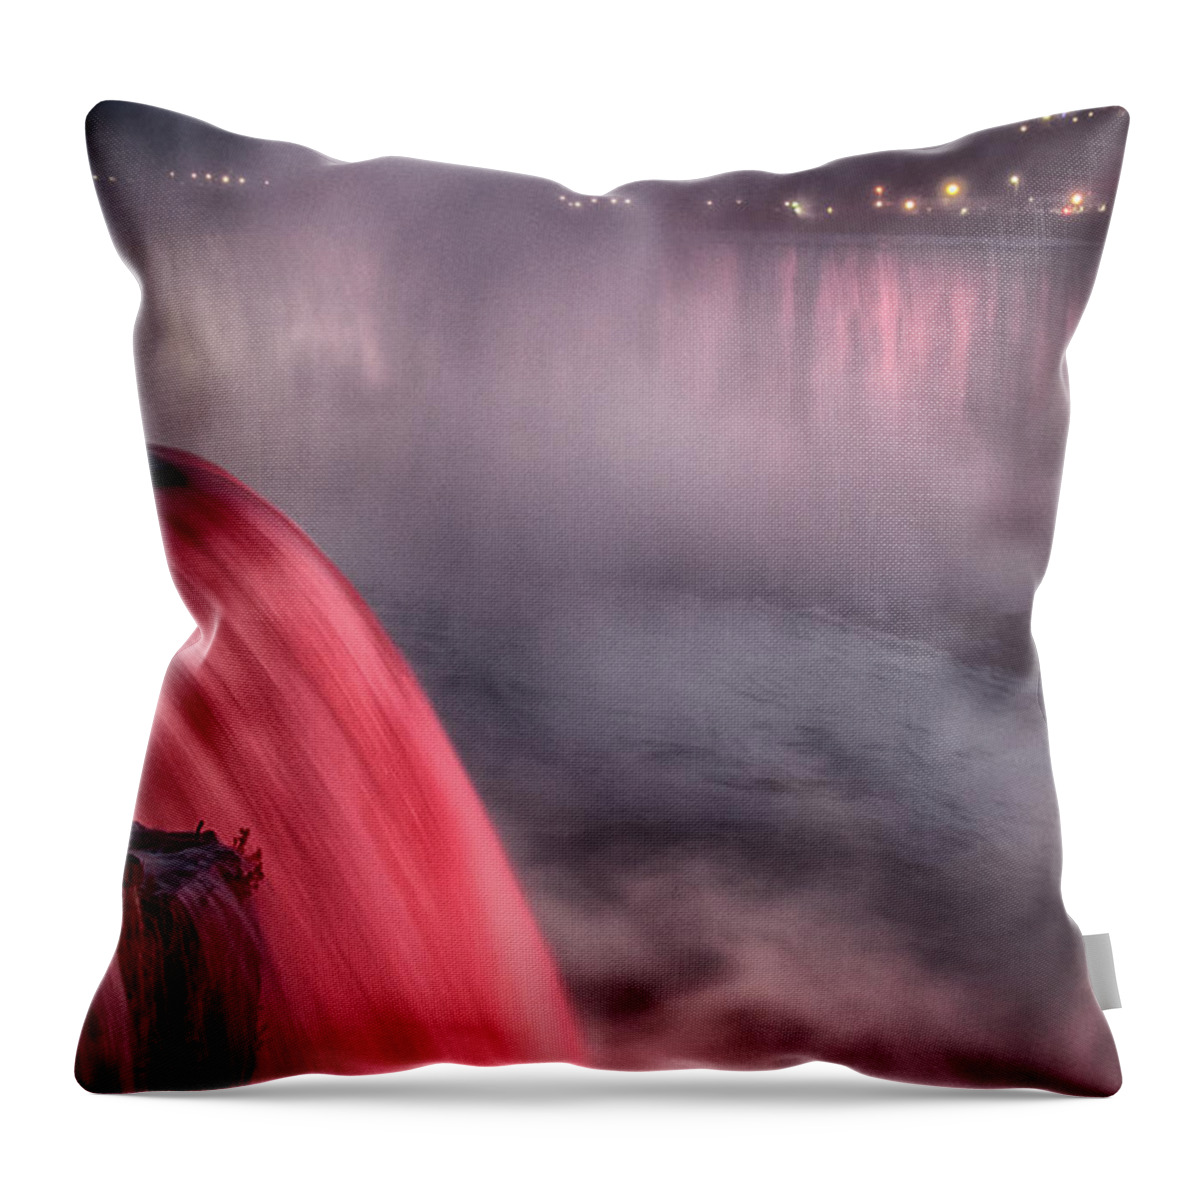 Niagara Falls Throw Pillow featuring the photograph Niagara Falls at Dusk V1 by Tom Kelly